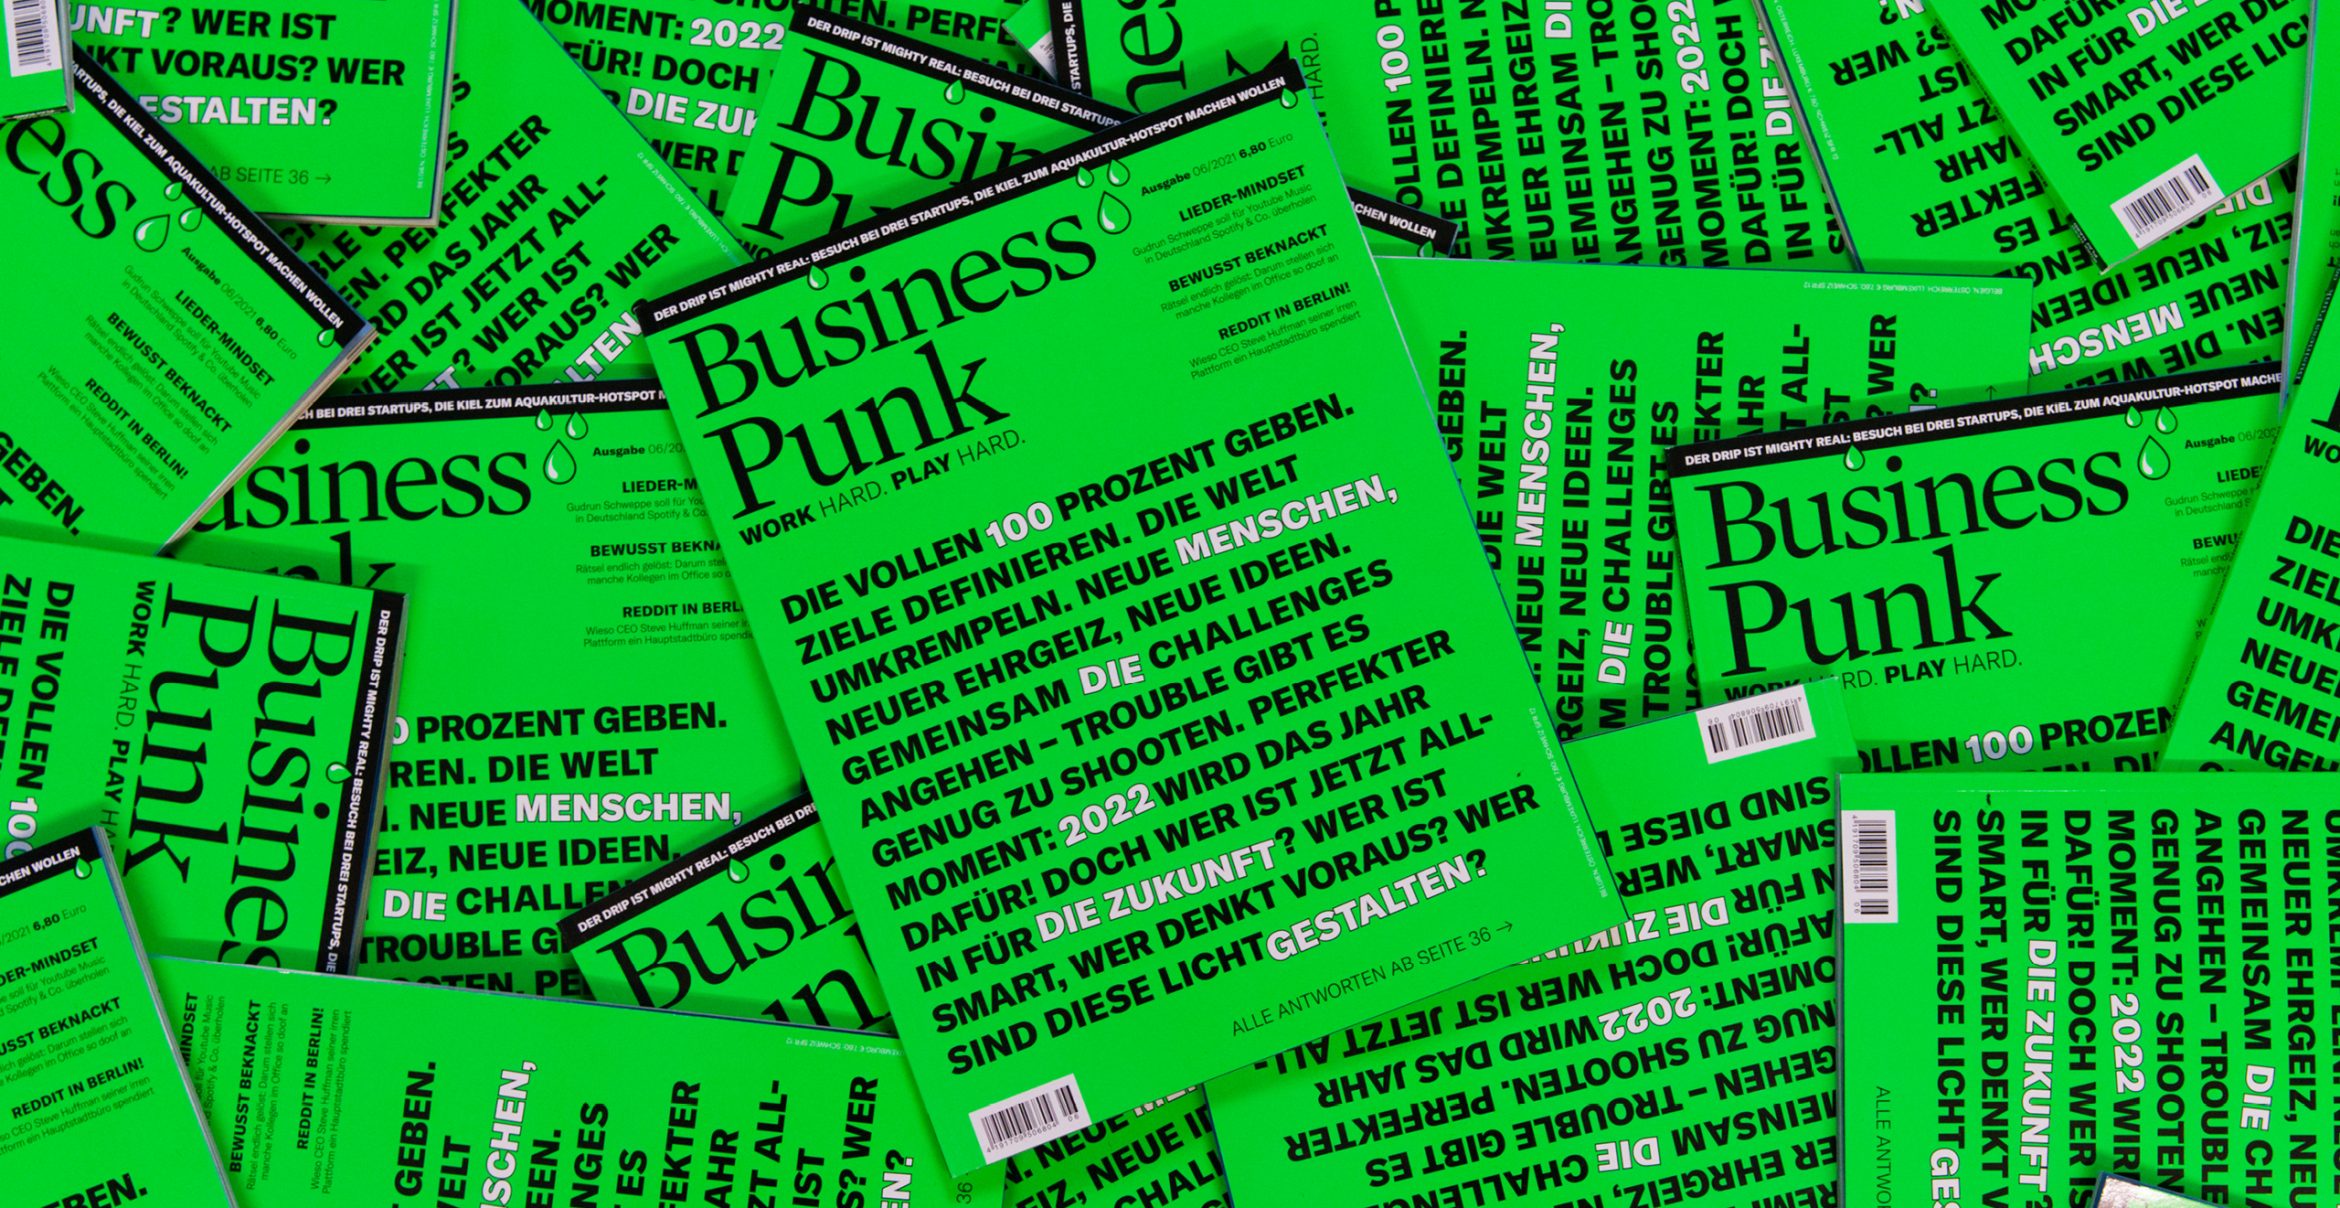 Release-Day: Die neue Ausgabe von Business Punk ist da!